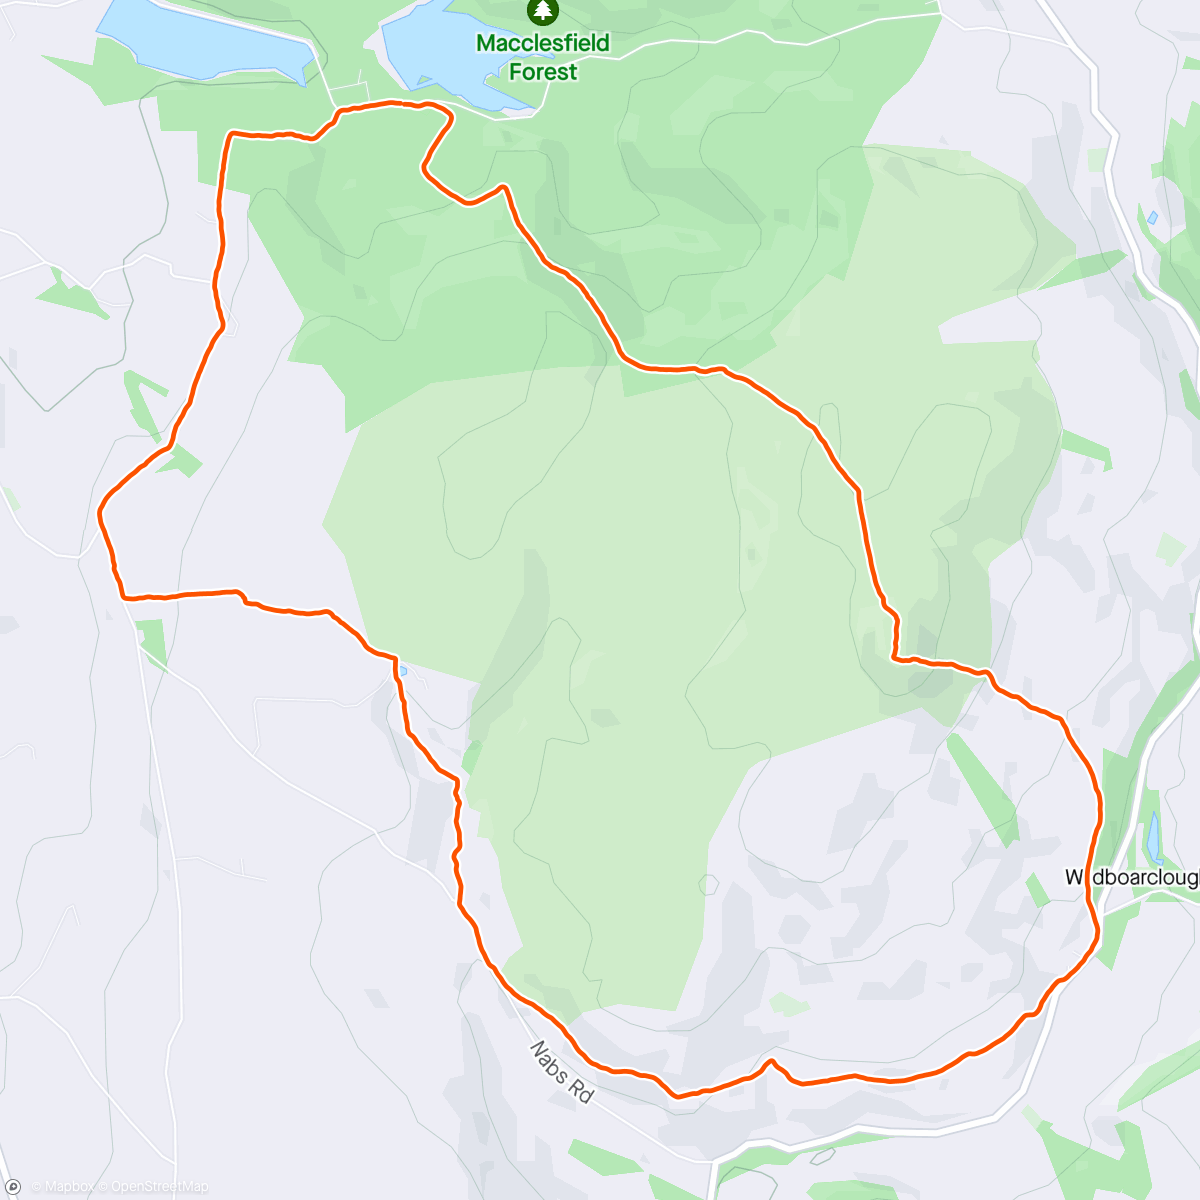 Mapa de la actividad, Morning Hike